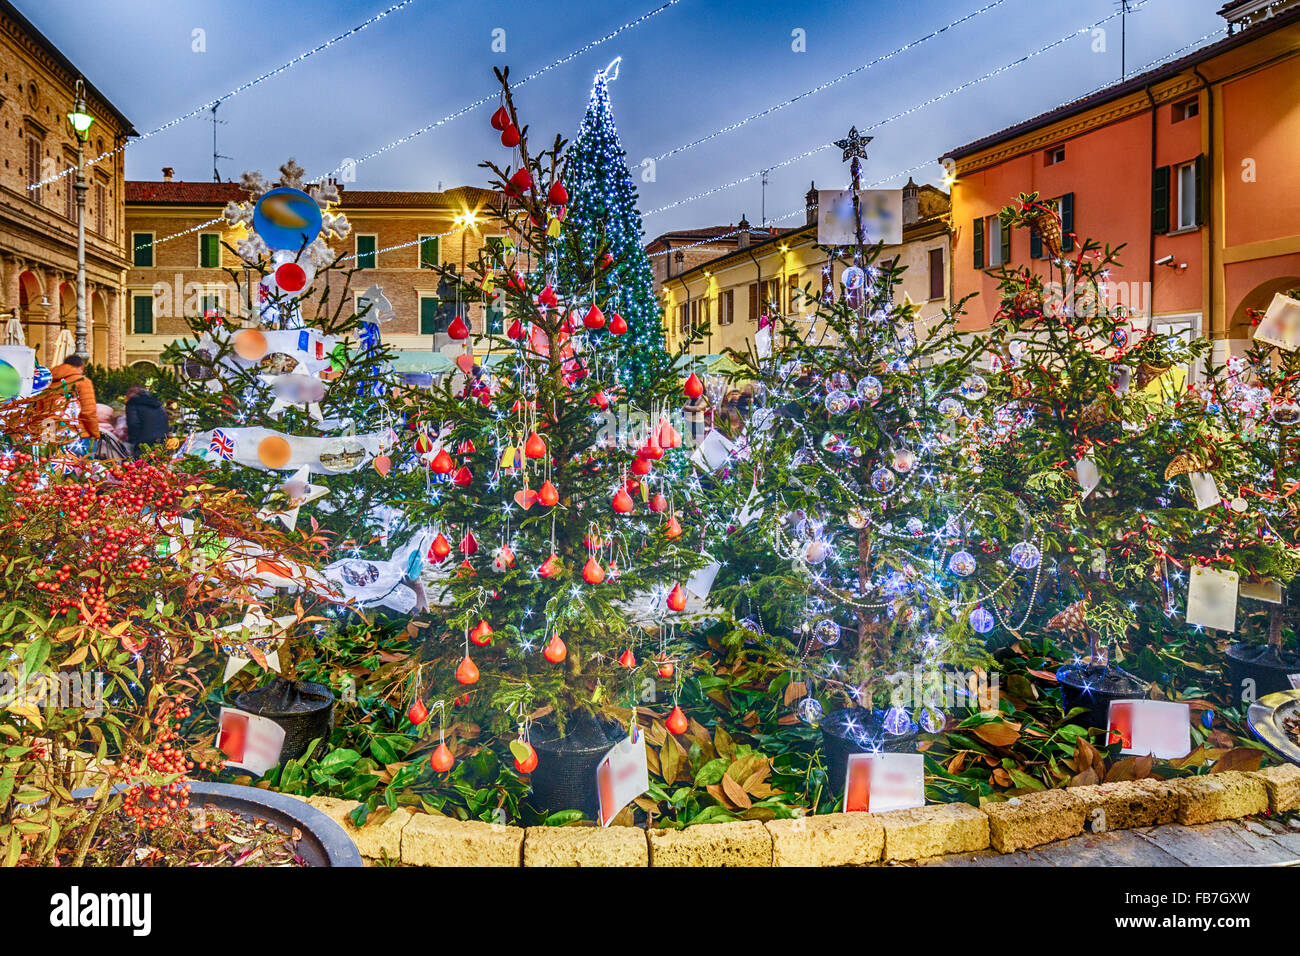 Anciens palais et décorations de Noël dans les rues d'un village médiéval dans la campagne de la Romagne, Italie Banque D'Images